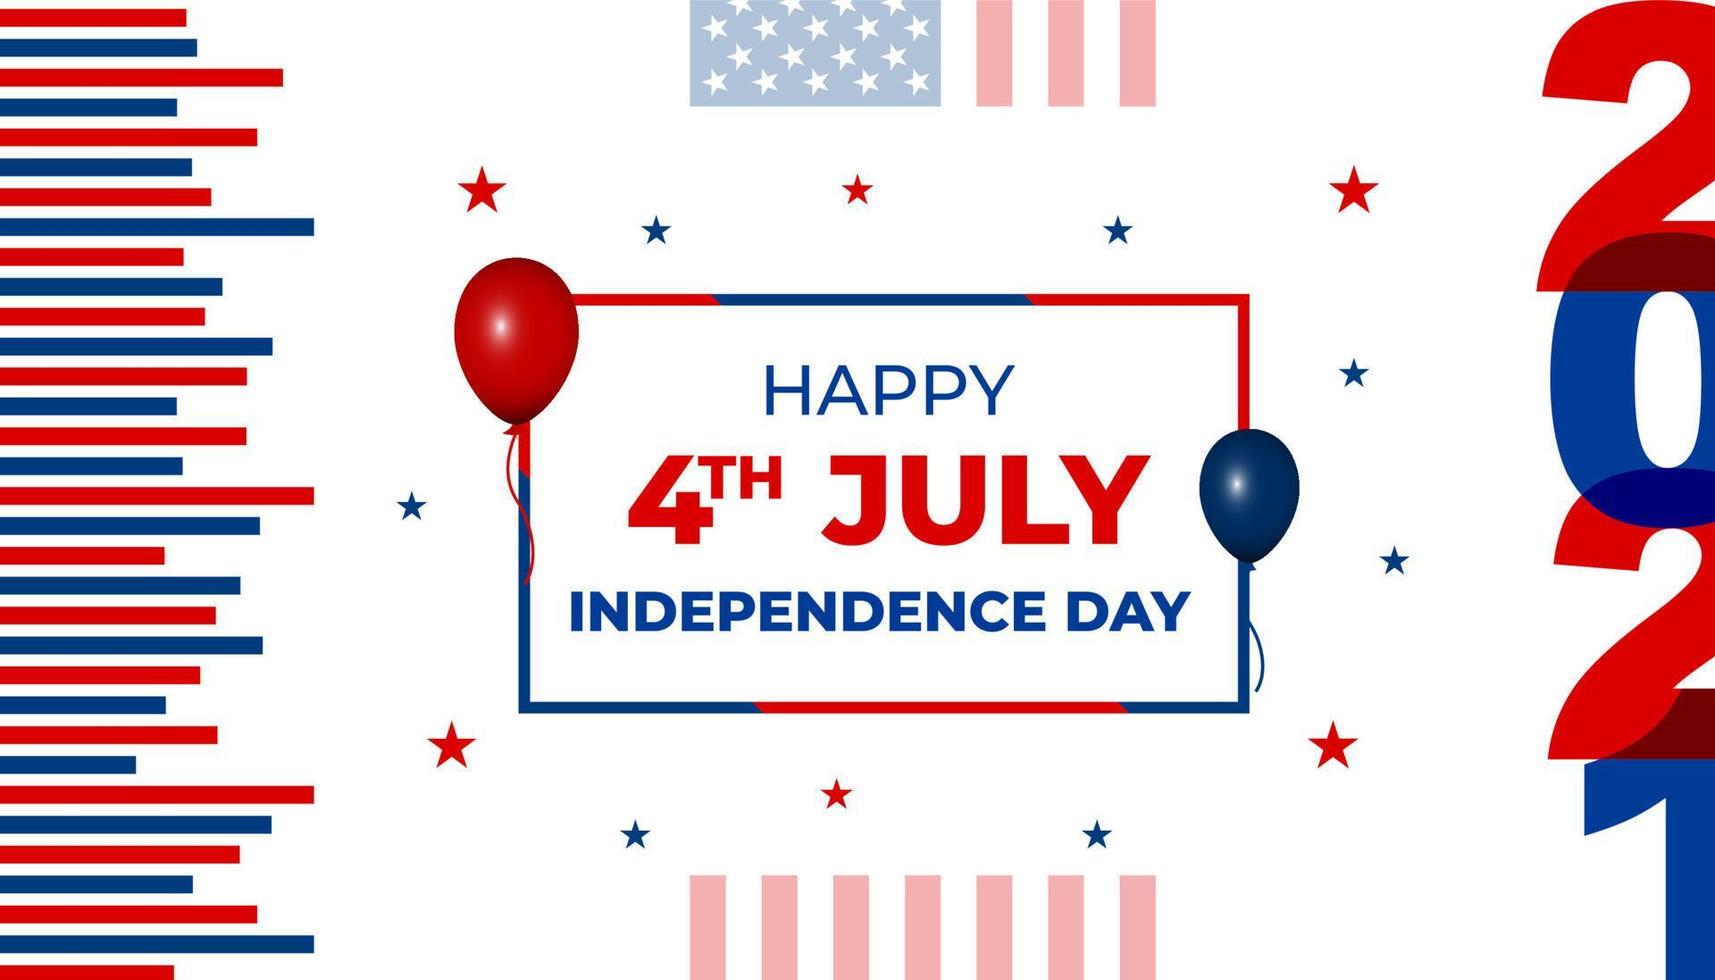 fond de fête de l'indépendance des états-unis avec des éléments du drapeau américain. 4 juillet. fond de célébration de la fête de l'indépendance des états-unis. vecteur